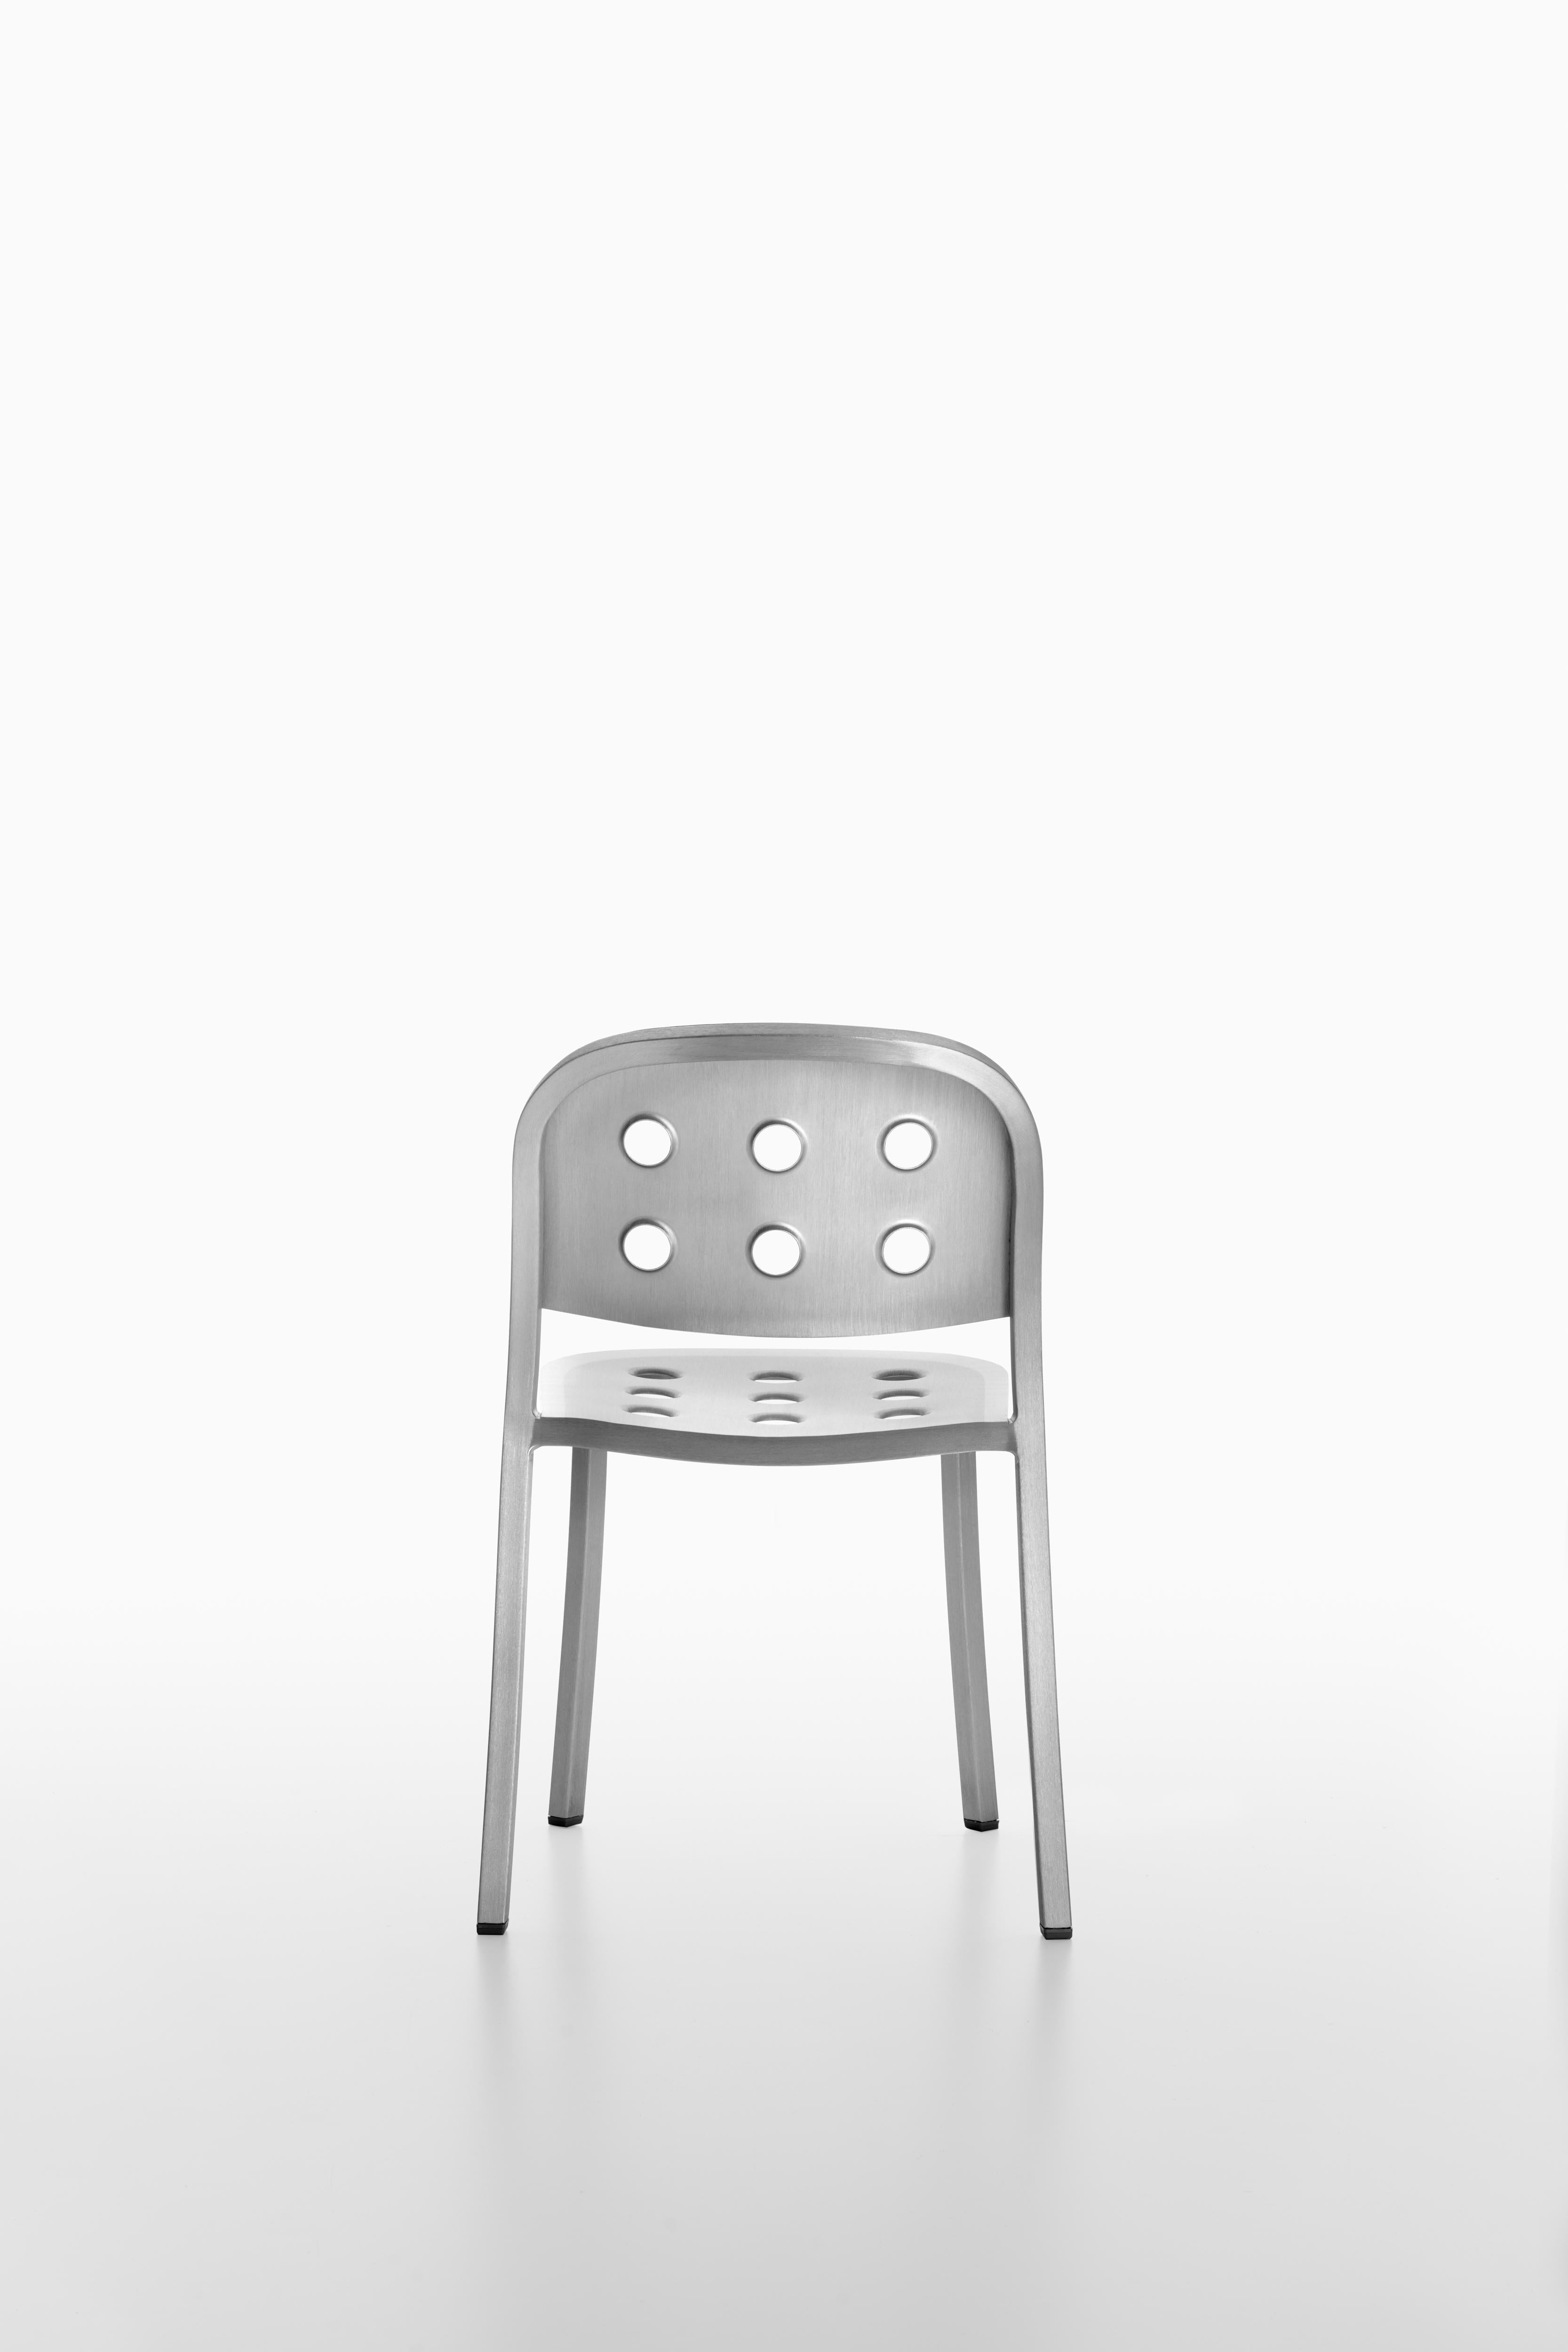 custom aluminium stacking chair